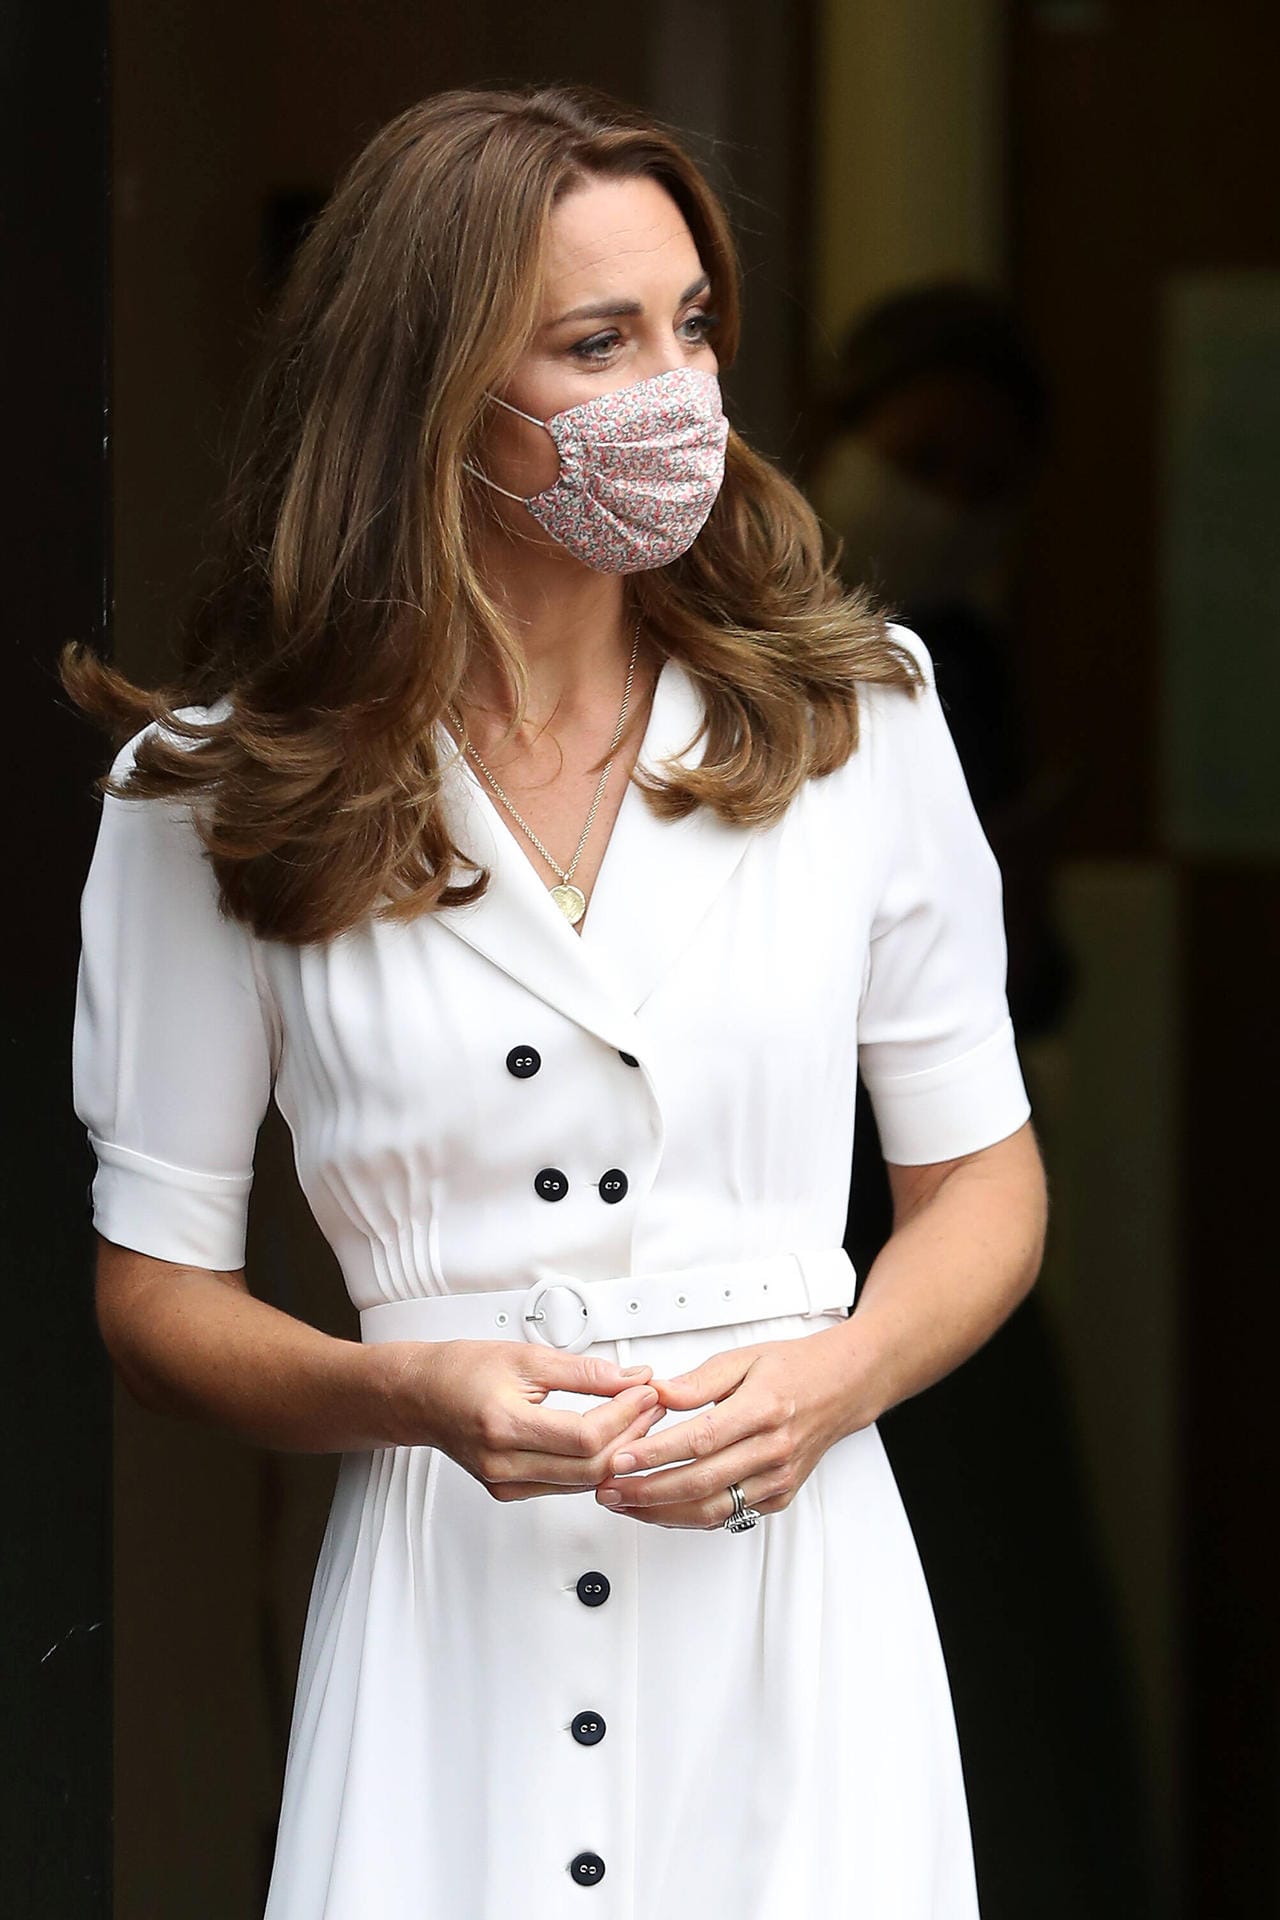 Zum ersten Mal erschien die Frau von Prinz William mit einem Mund-Nasen-Schutz.